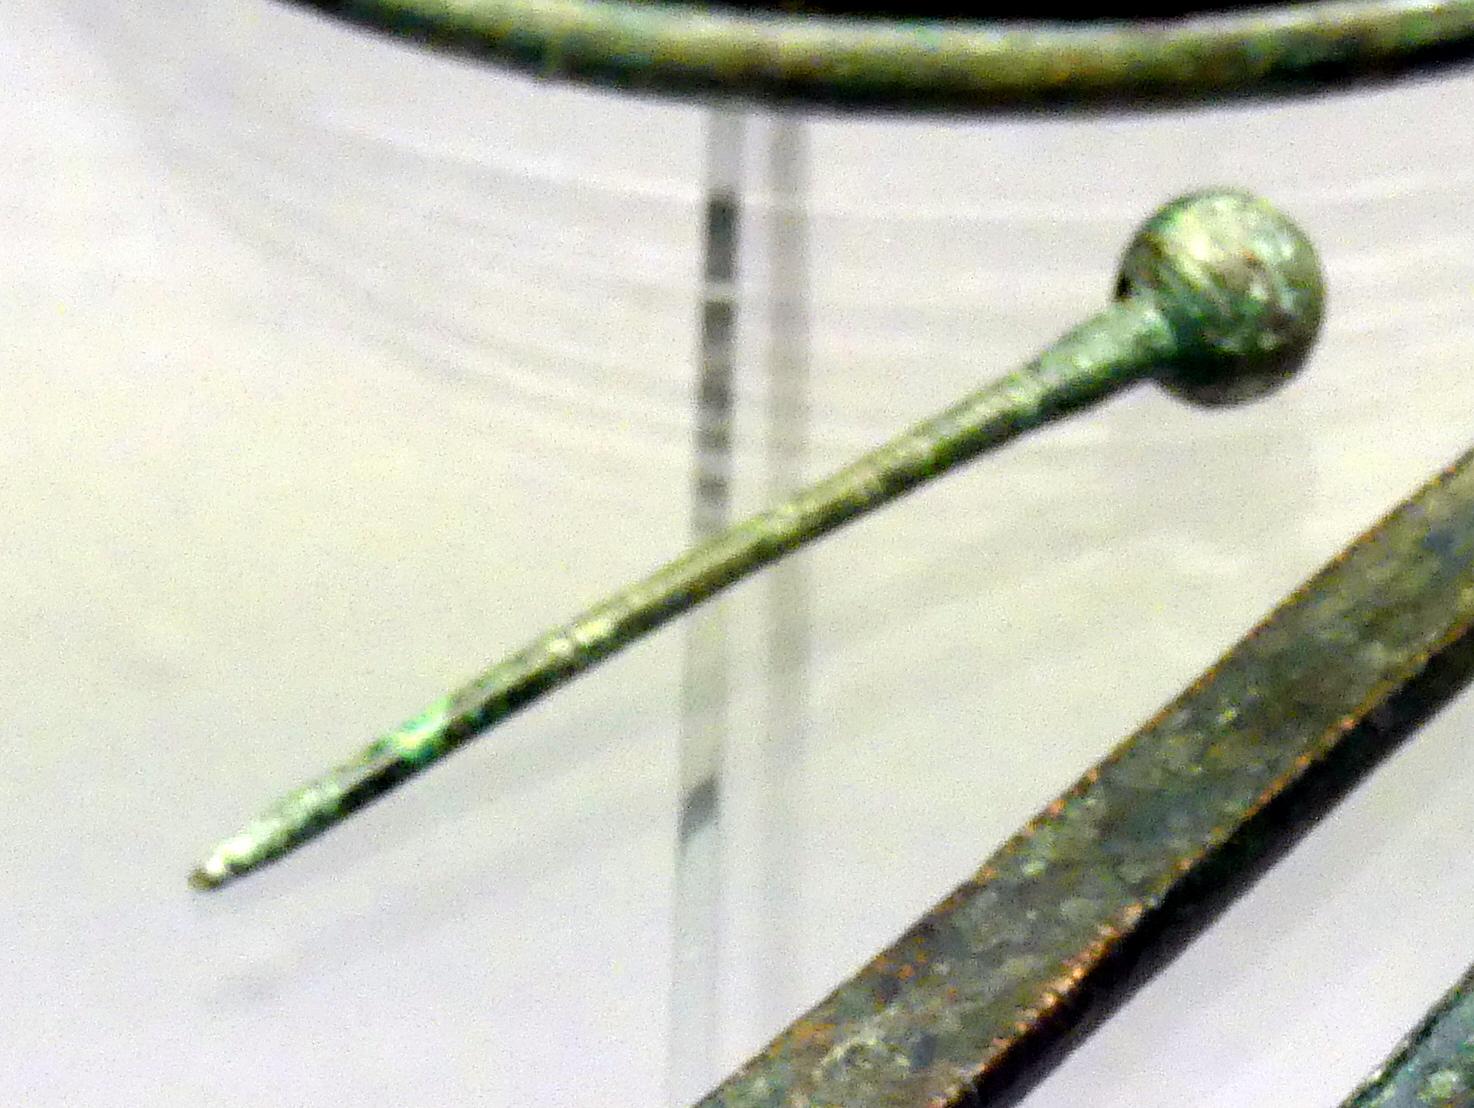 Durchlochte Kugelkopfnadel, Frühe Bronzezeit, 3365 - 1200 v. Chr., Bild 1/2